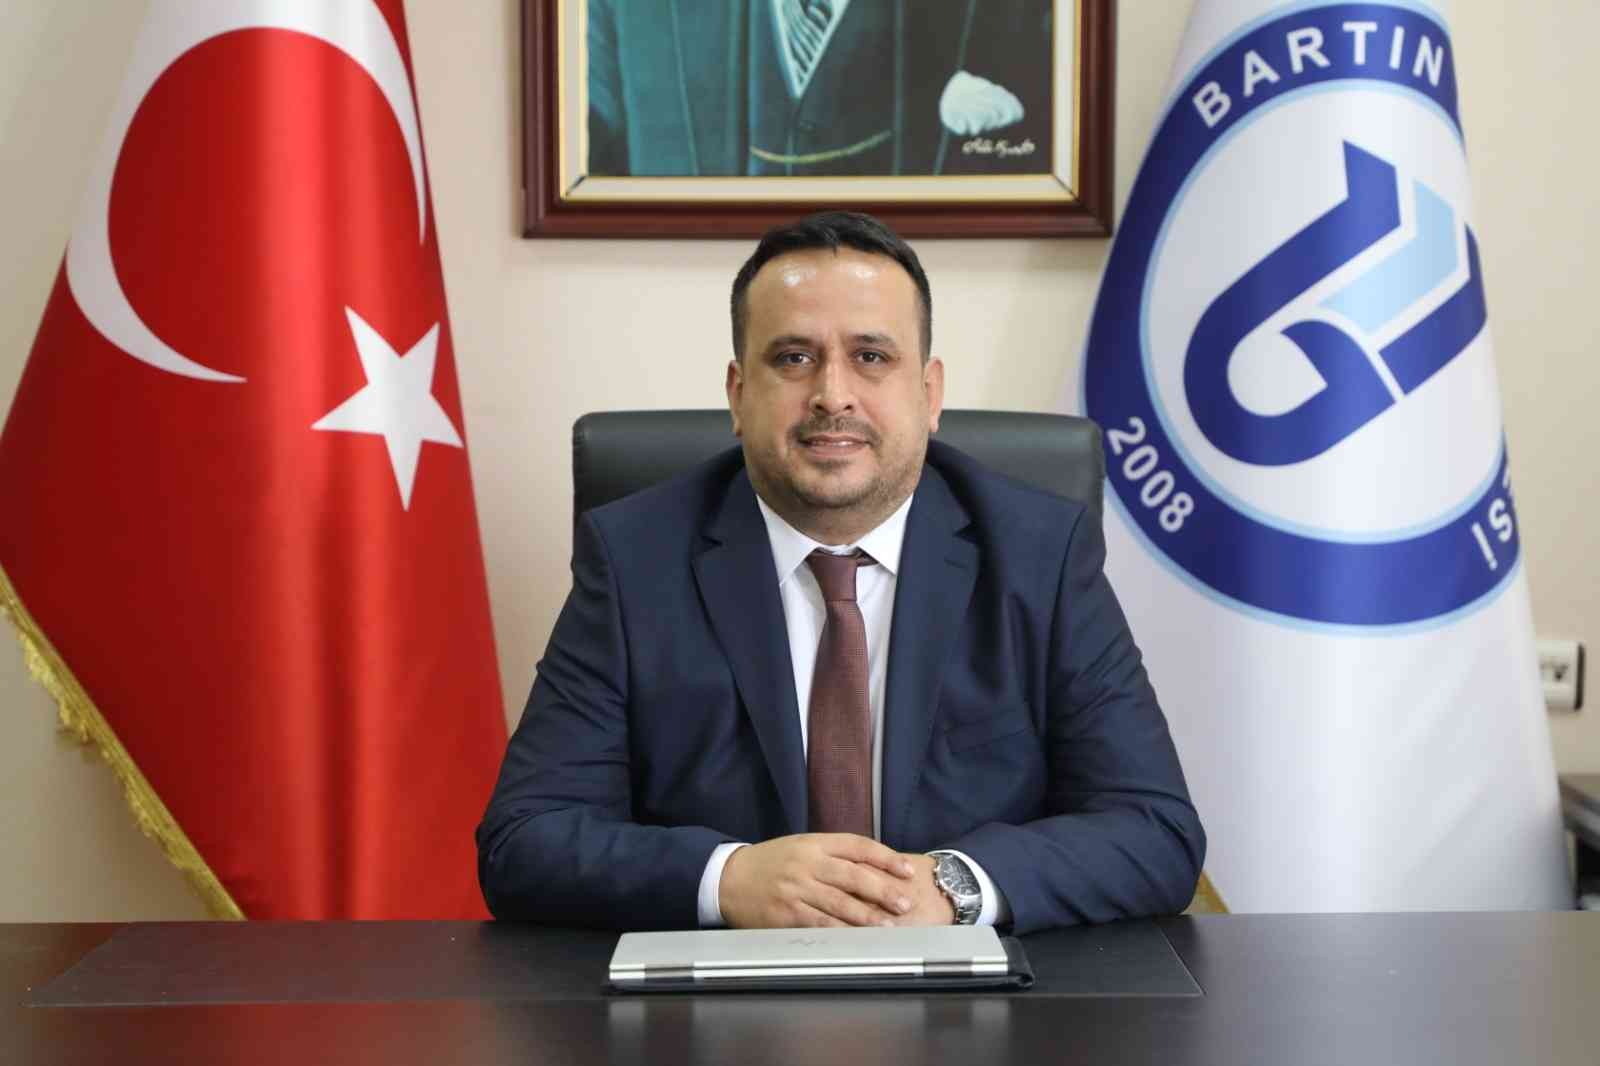 TÜBA Asosiye üyeliğine seçilen Prof. Dr. Mehmet Zahmakıran beratını aldı #bartin